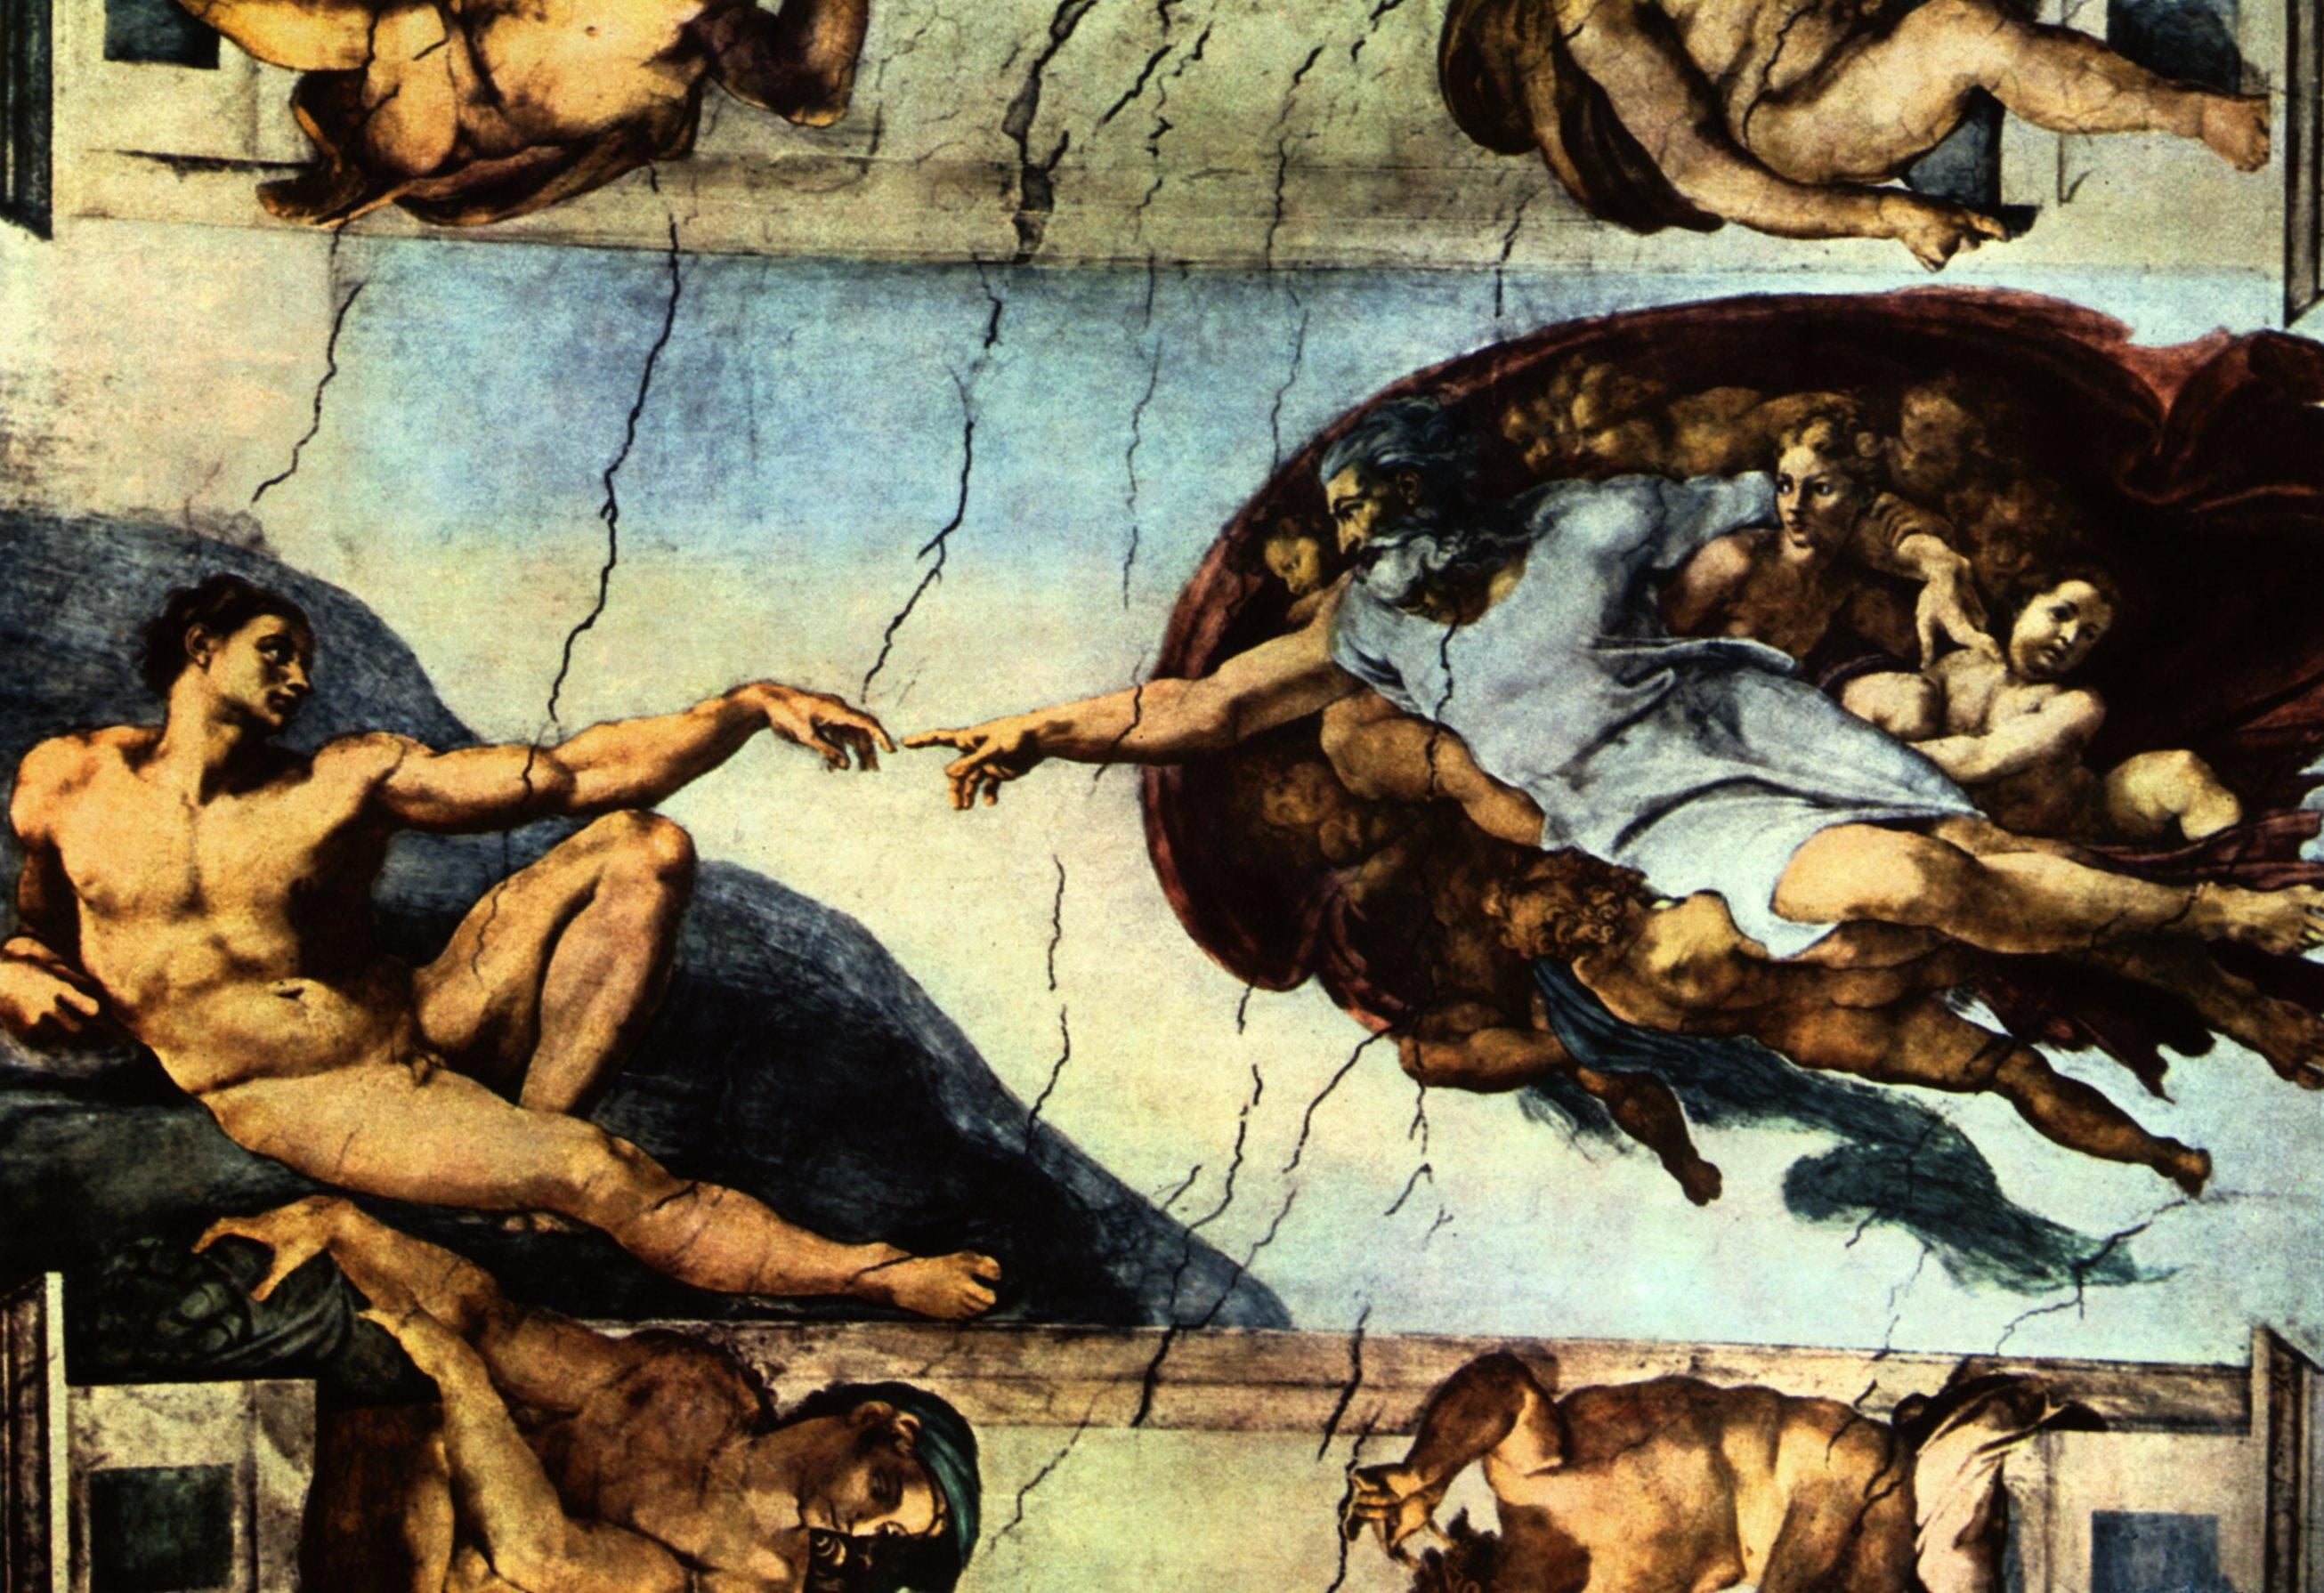 Творения человека всемирного. Микеланджело Сикстинская капелла Сотворение Адама. "Сотворение Адама" Микеланджело, 1511. Микеланджело Буонарроти фреска Сотворение Адама. Сотворение Адама Сикстинская капелла Ватикан Рим Микеланджело 1508-1512.